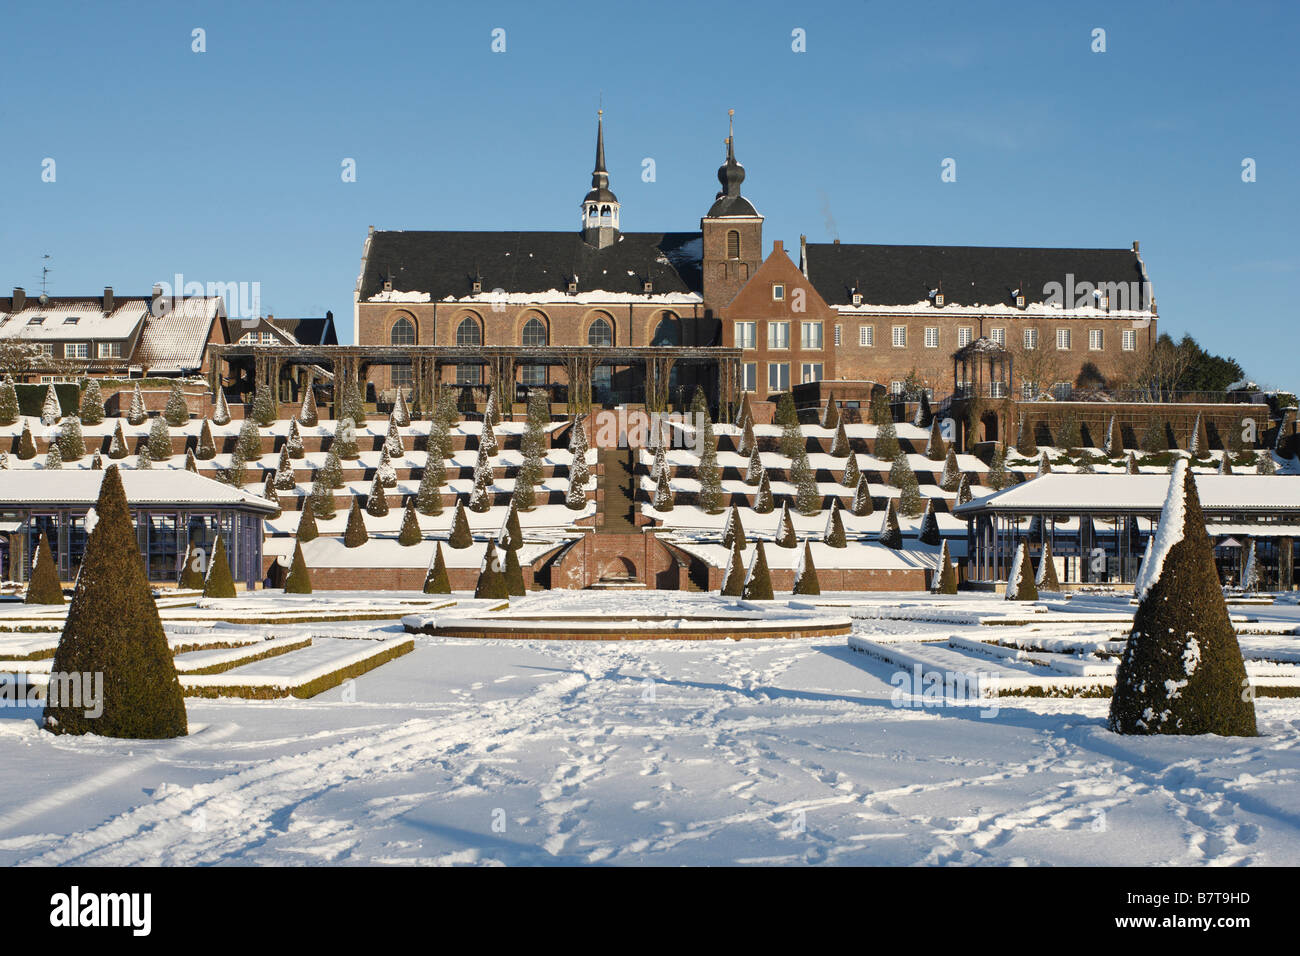 Kamp-Lintfort, Kloster Kamp im Schnee, Terrassengarten, Blick von Süden auf die Terrassen und das Kloster Foto Stock